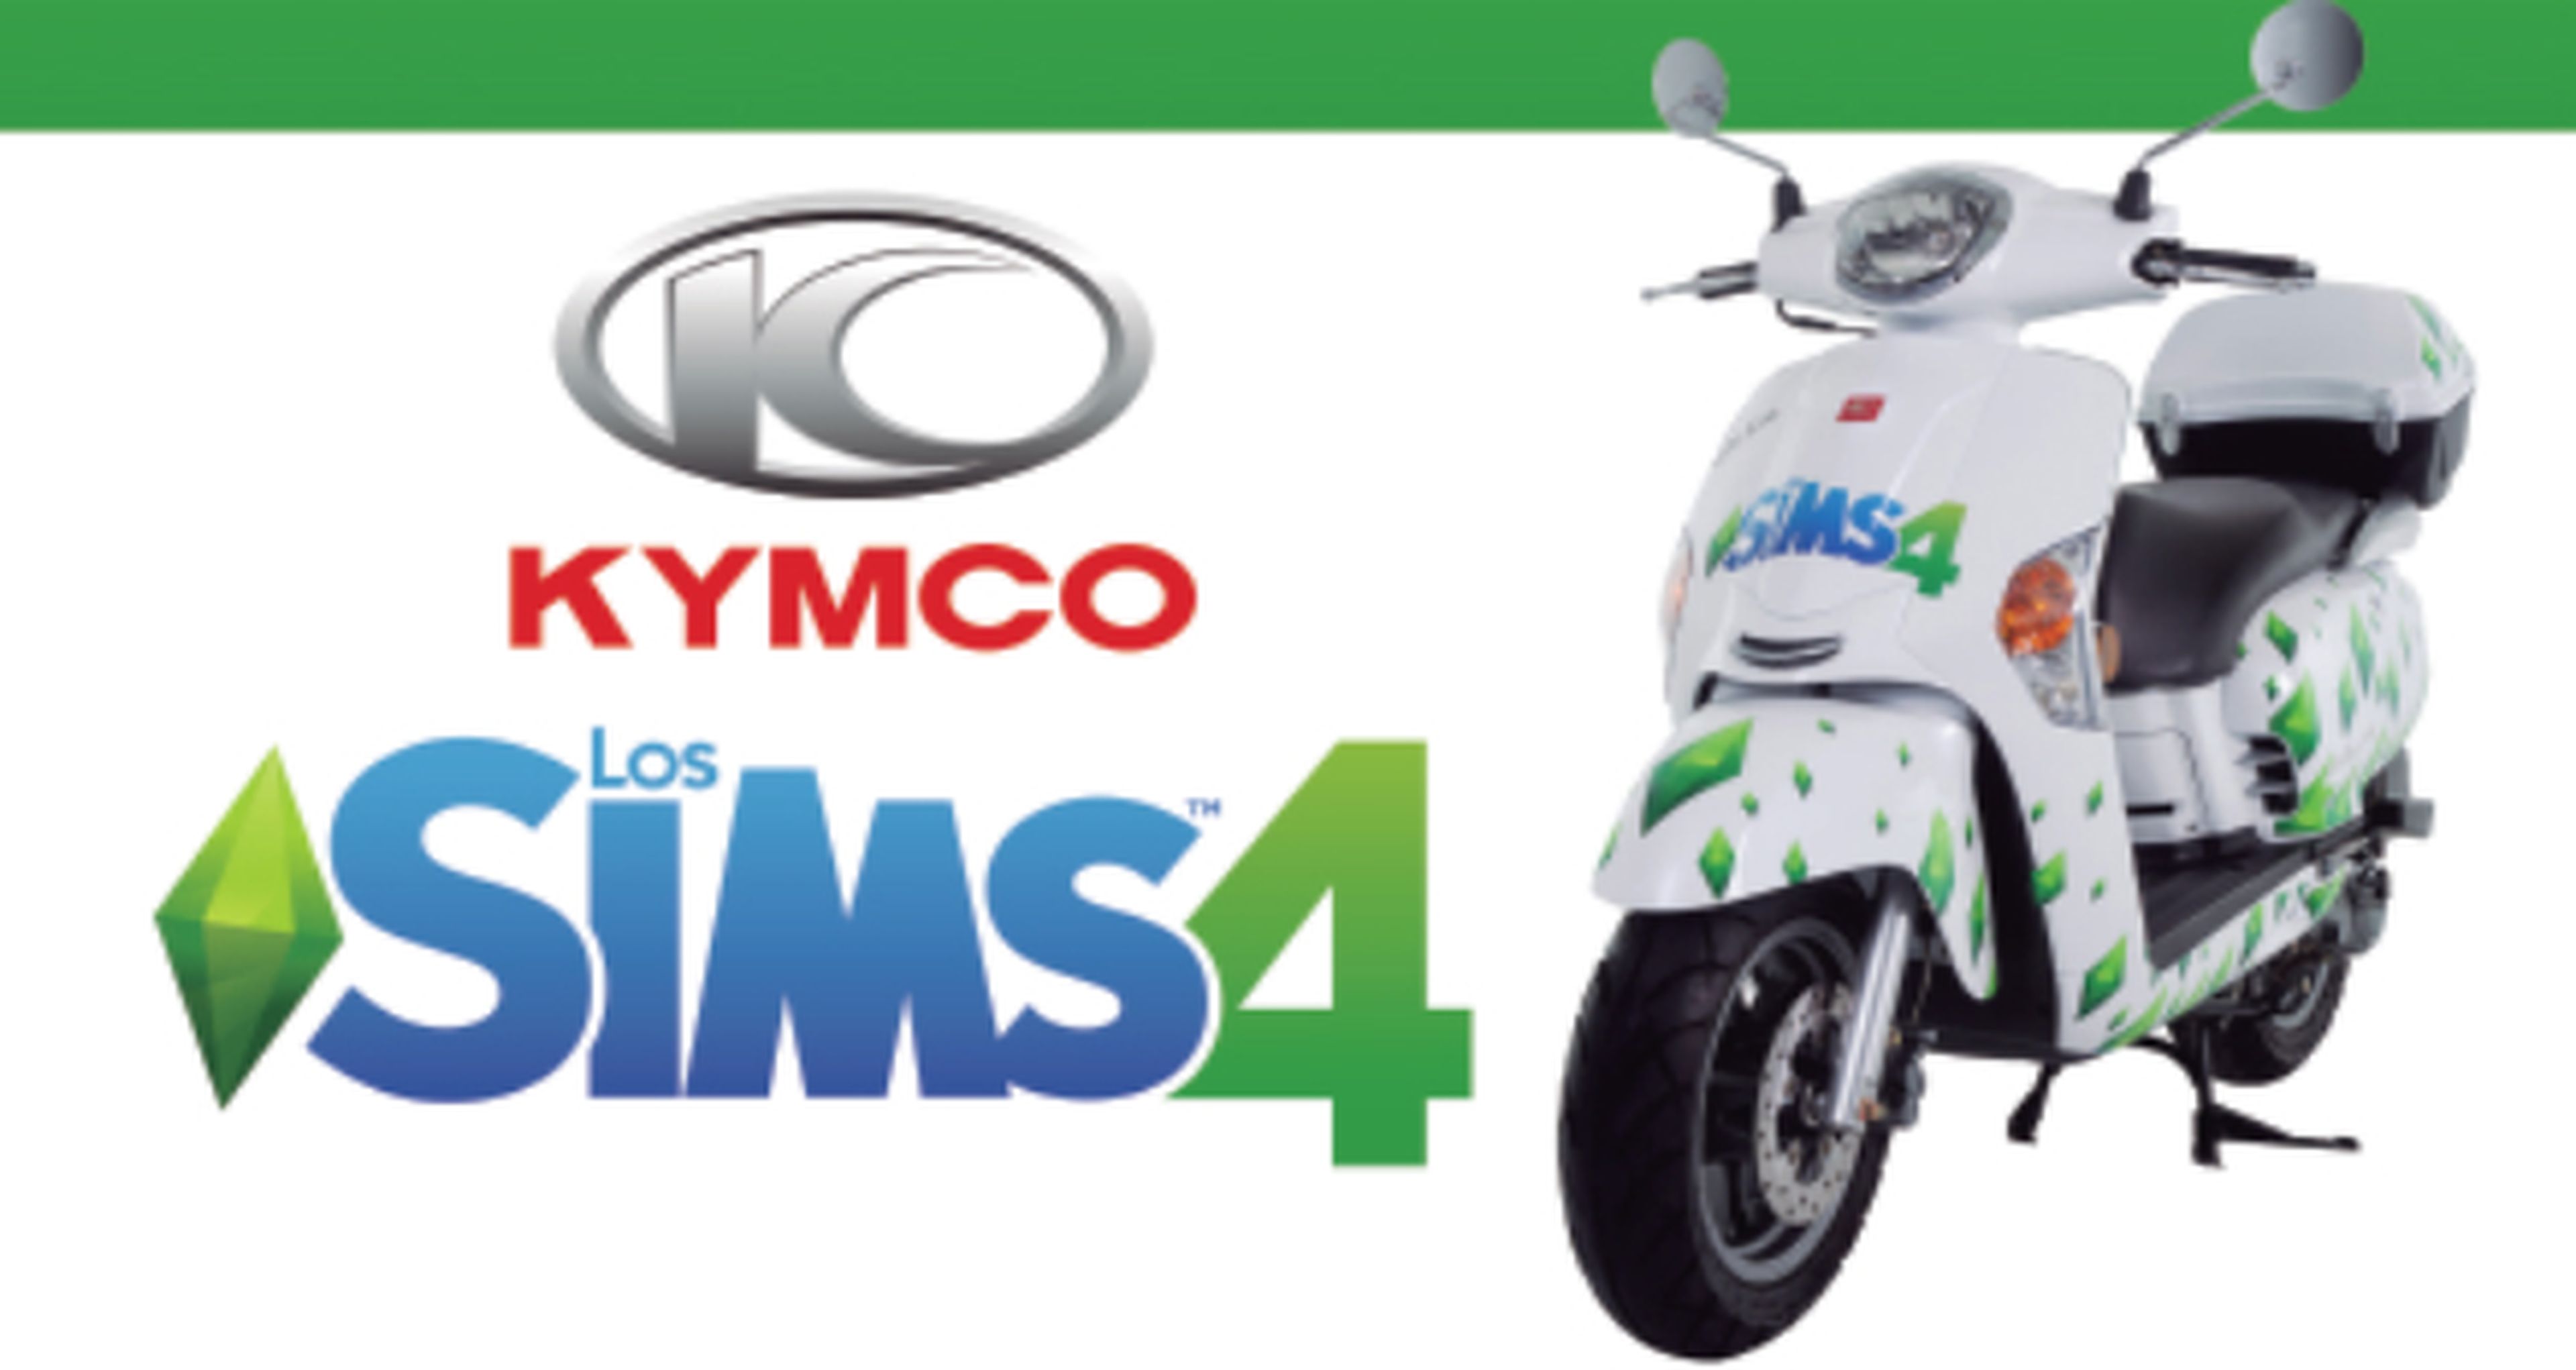 Concurso Madrid Games Week: gana una moto KYMCO de Los Sims 4